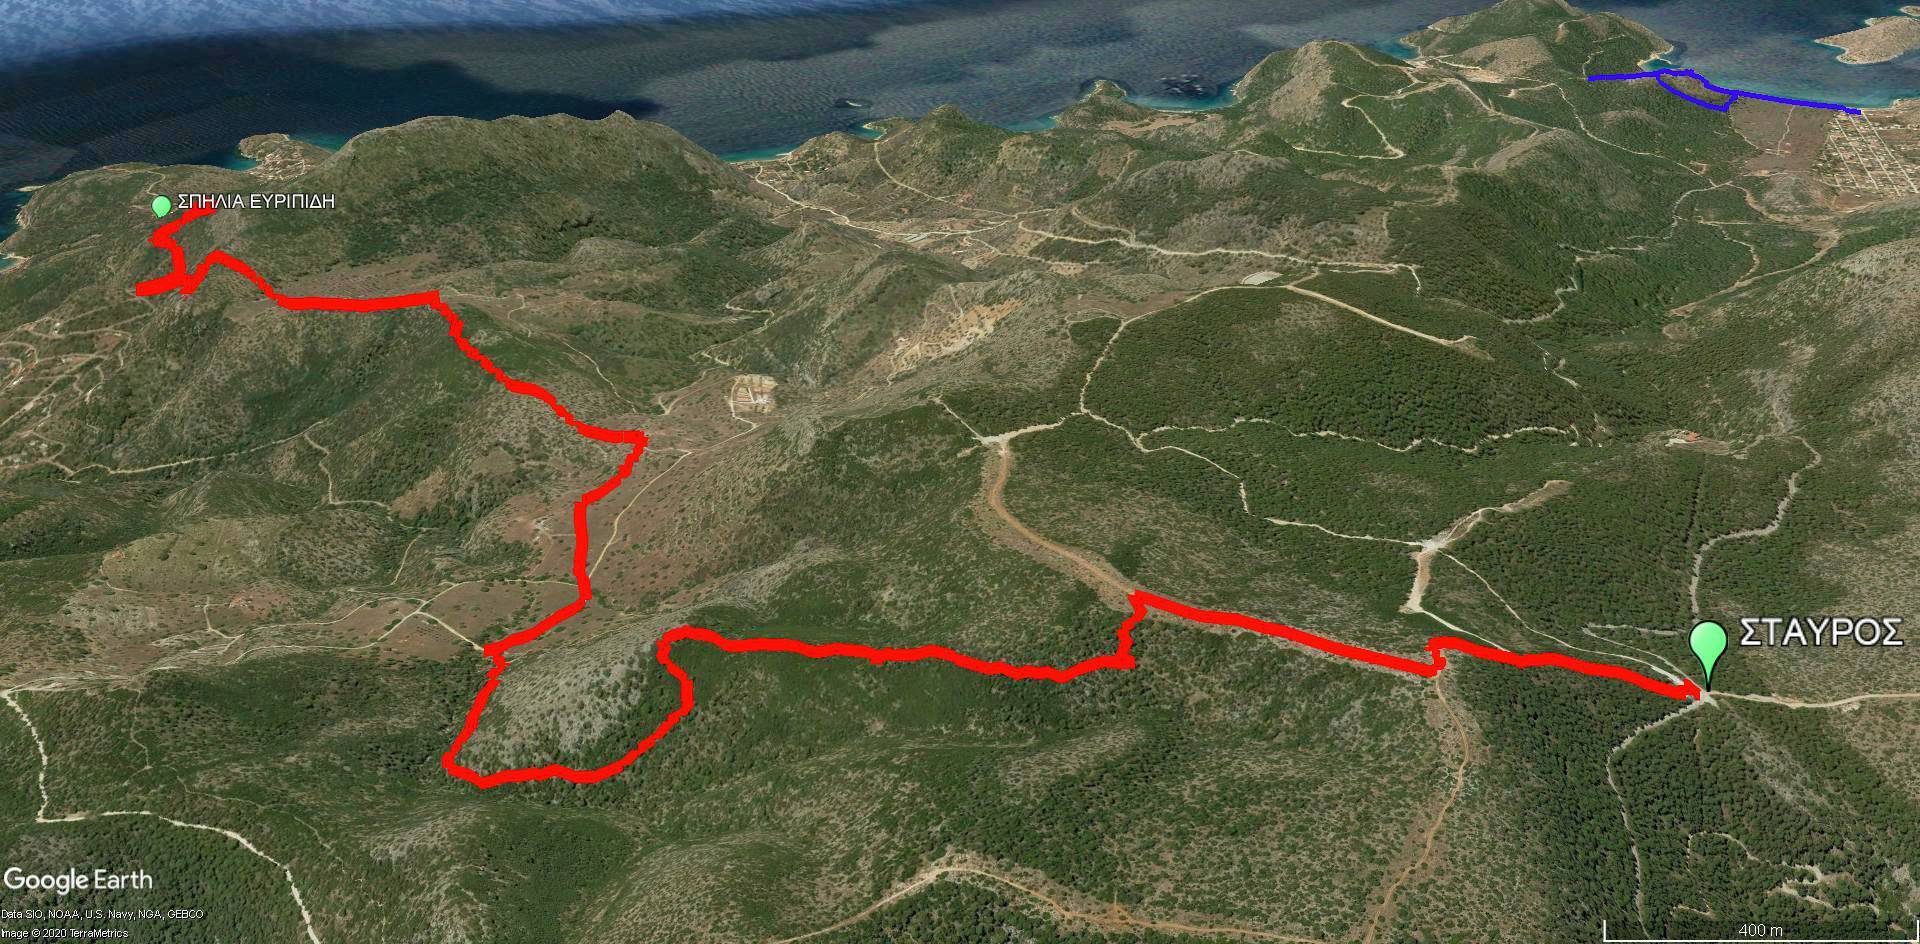 Δορυφορική εικόνα της διαδρομής Σταυρός-σπηλιά Ευριπίδη